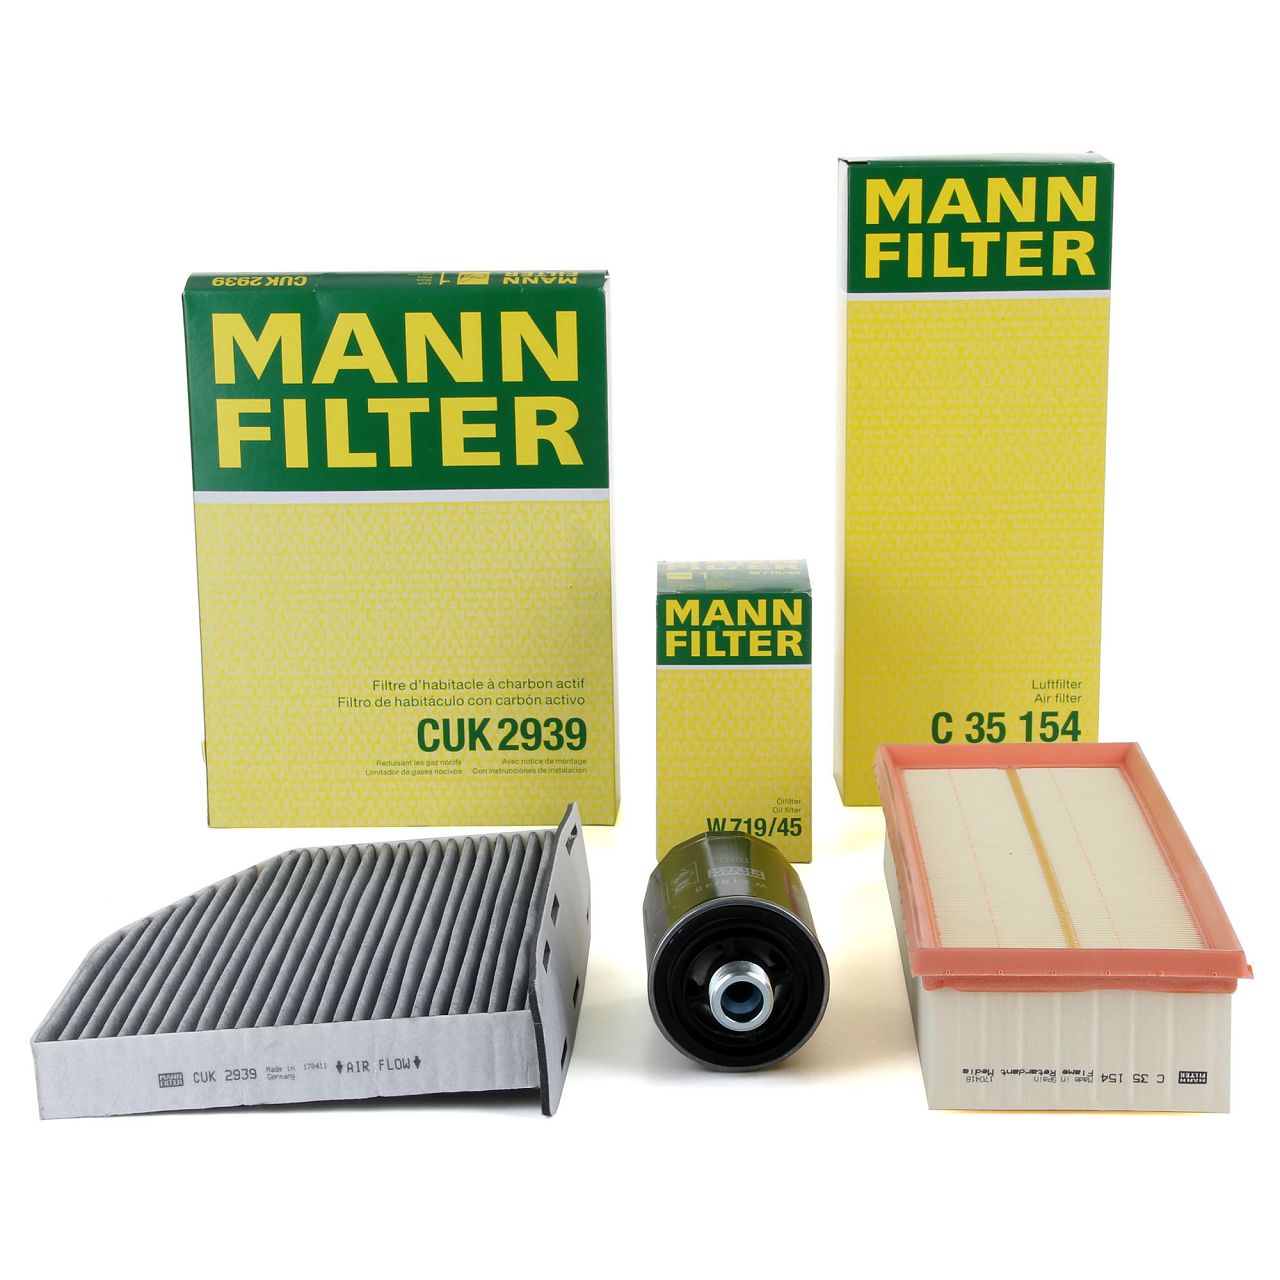 MANN Filter-Set VW Golf 5 6 Passat B6 B7 Tiguan AUDI A3 8P Q3 8U TT 8J 1.8/2.0 TSI/GTI